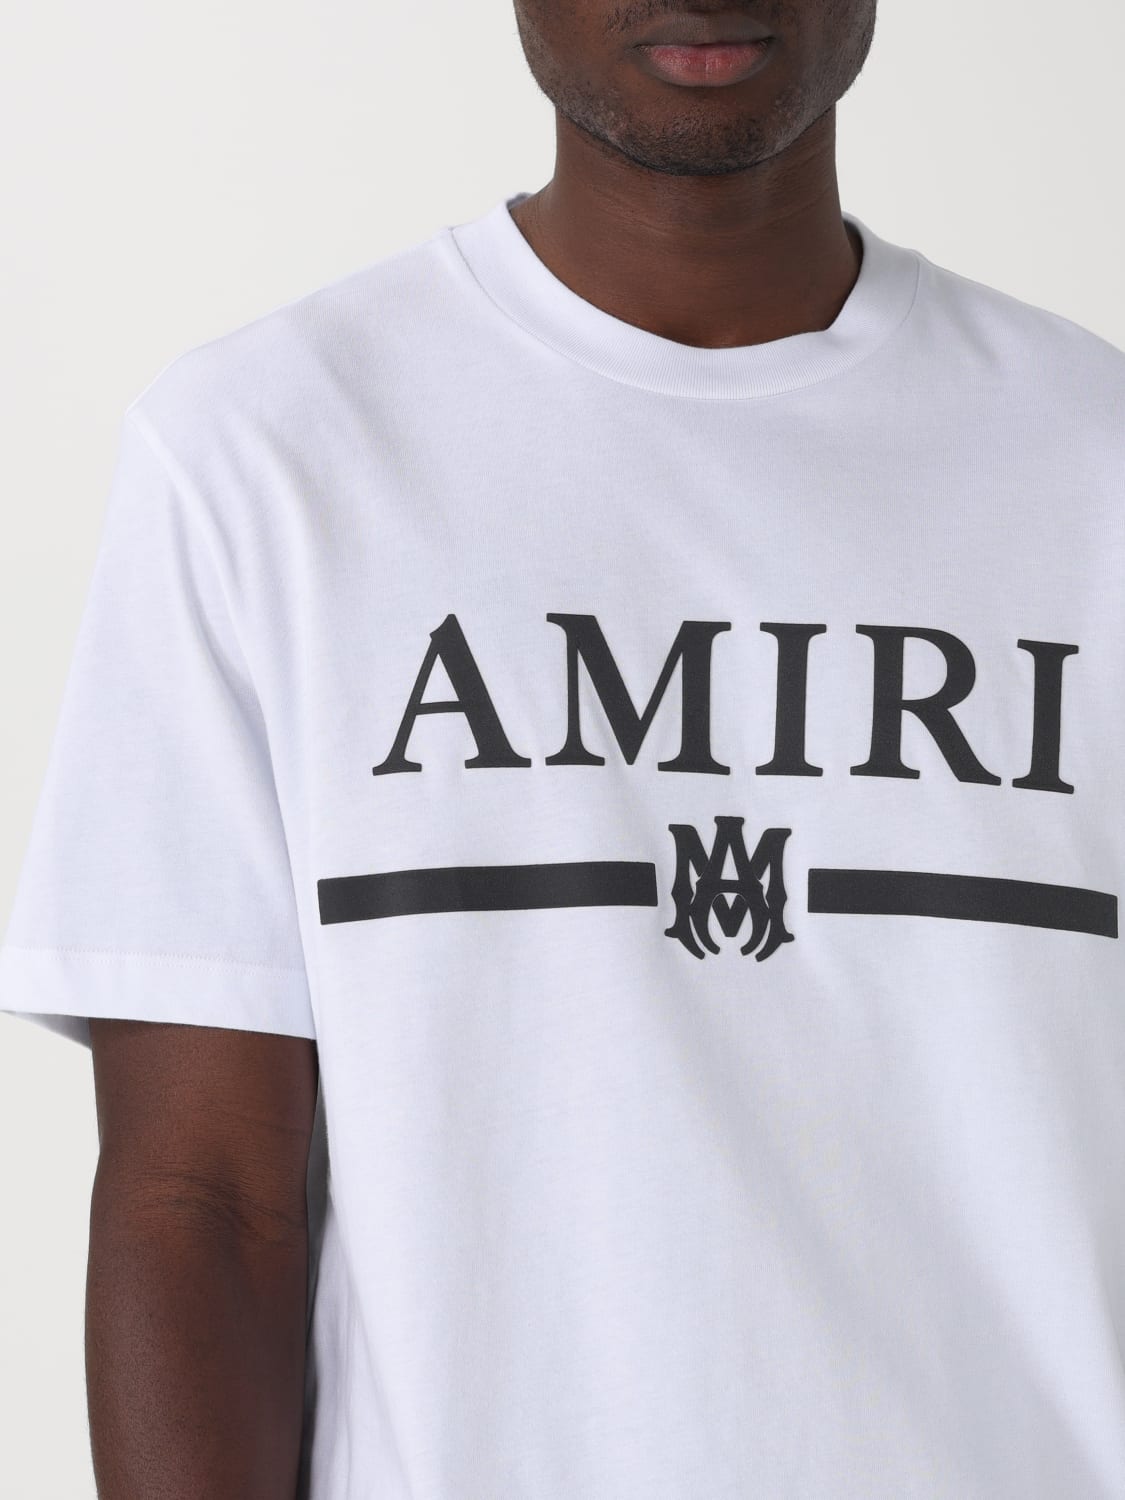 【値下げ対応可能‼️】  AMIRI   Tシャツ   Lサイズ   大きめ値下げ対応可能です